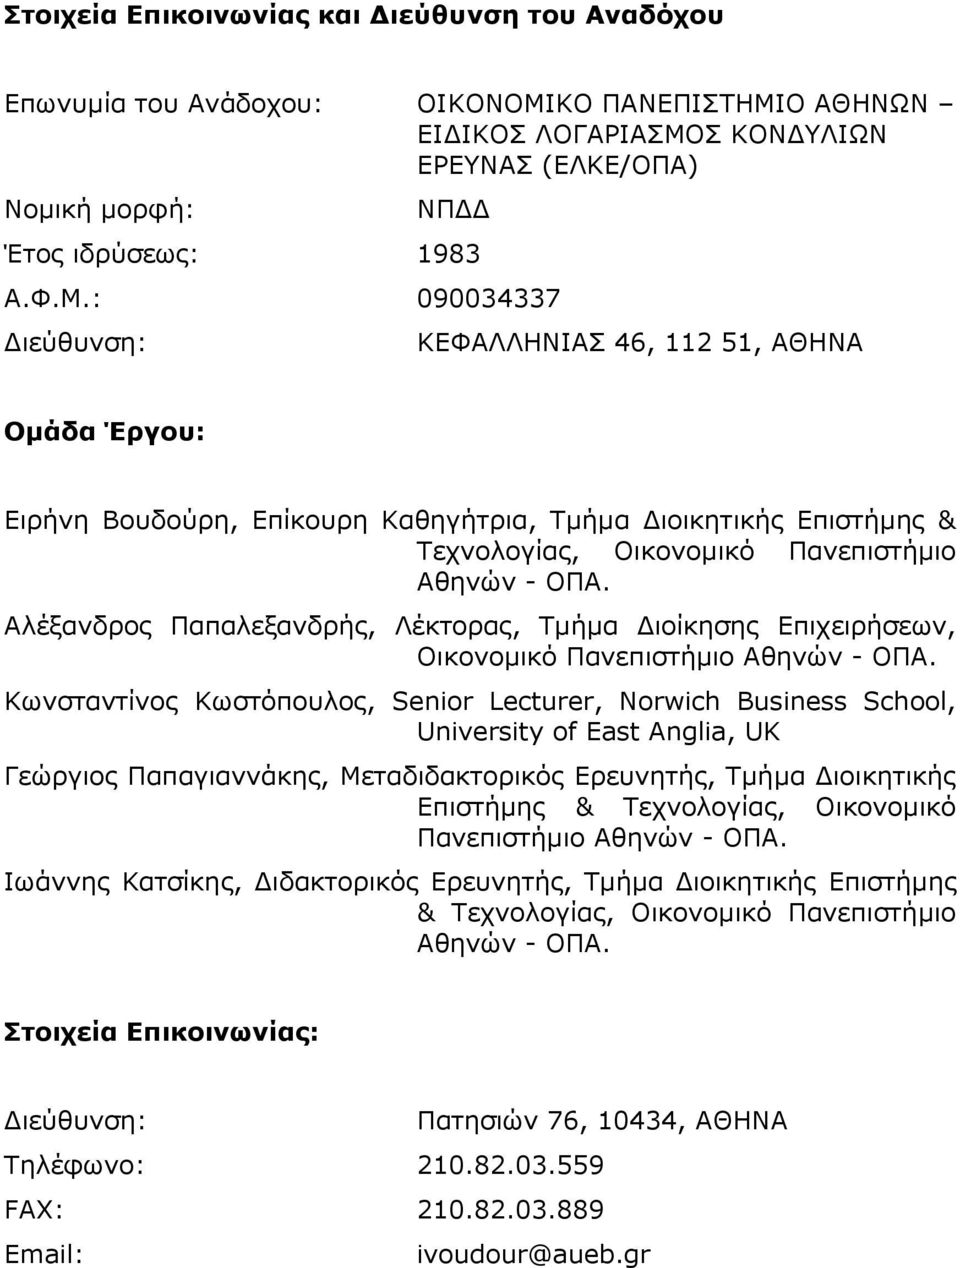 Αλέξανδρος Παπαλεξανδρής, Λέκτορας, Τμήμα Διοίκησης Επιχειρήσεων, Οικονομικό Πανεπιστήμιο Αθηνών - ΟΠΑ.